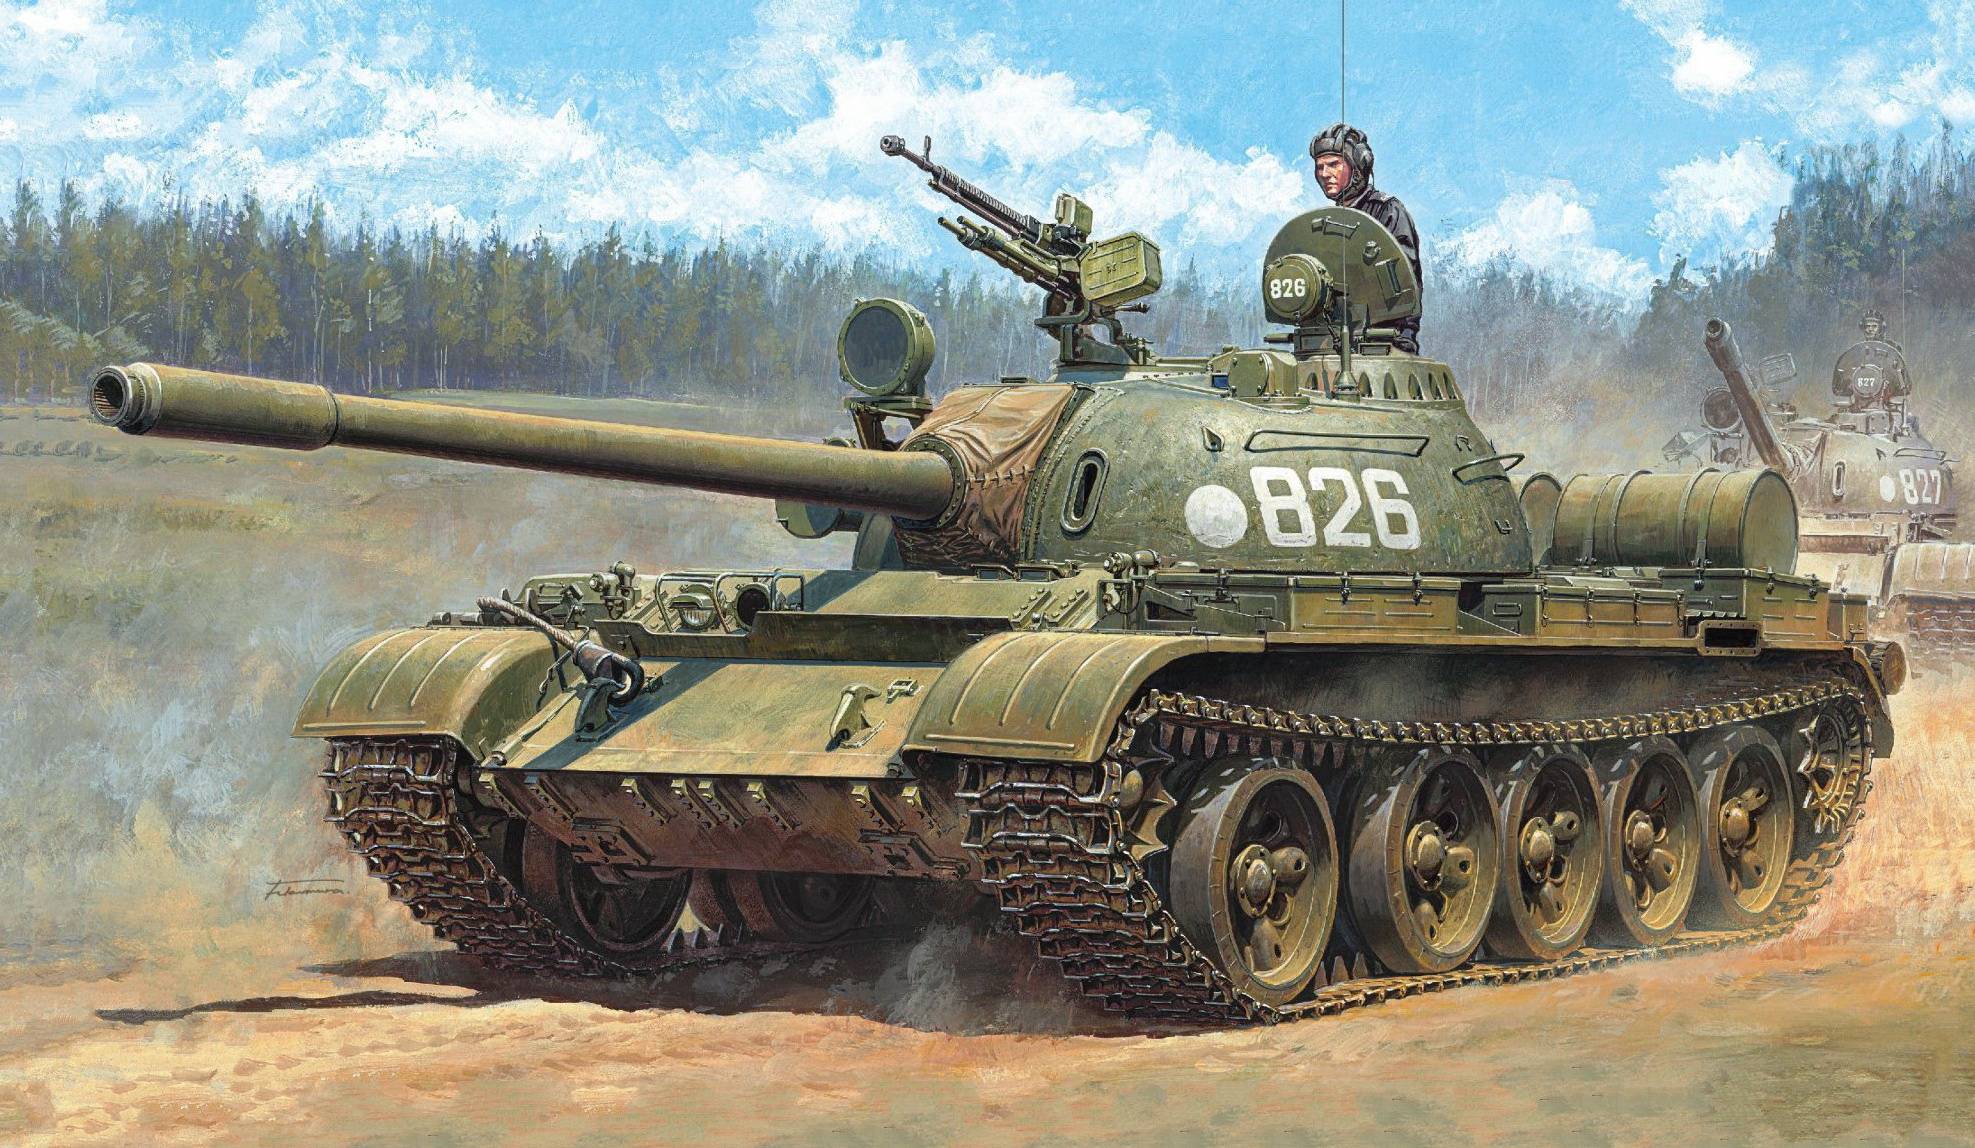 Танк т 55, технические характеристики ттх, какие модернизированные модели, какое вооружение и экипаж, в каких боях применялся, история создания и конструктивные особенности